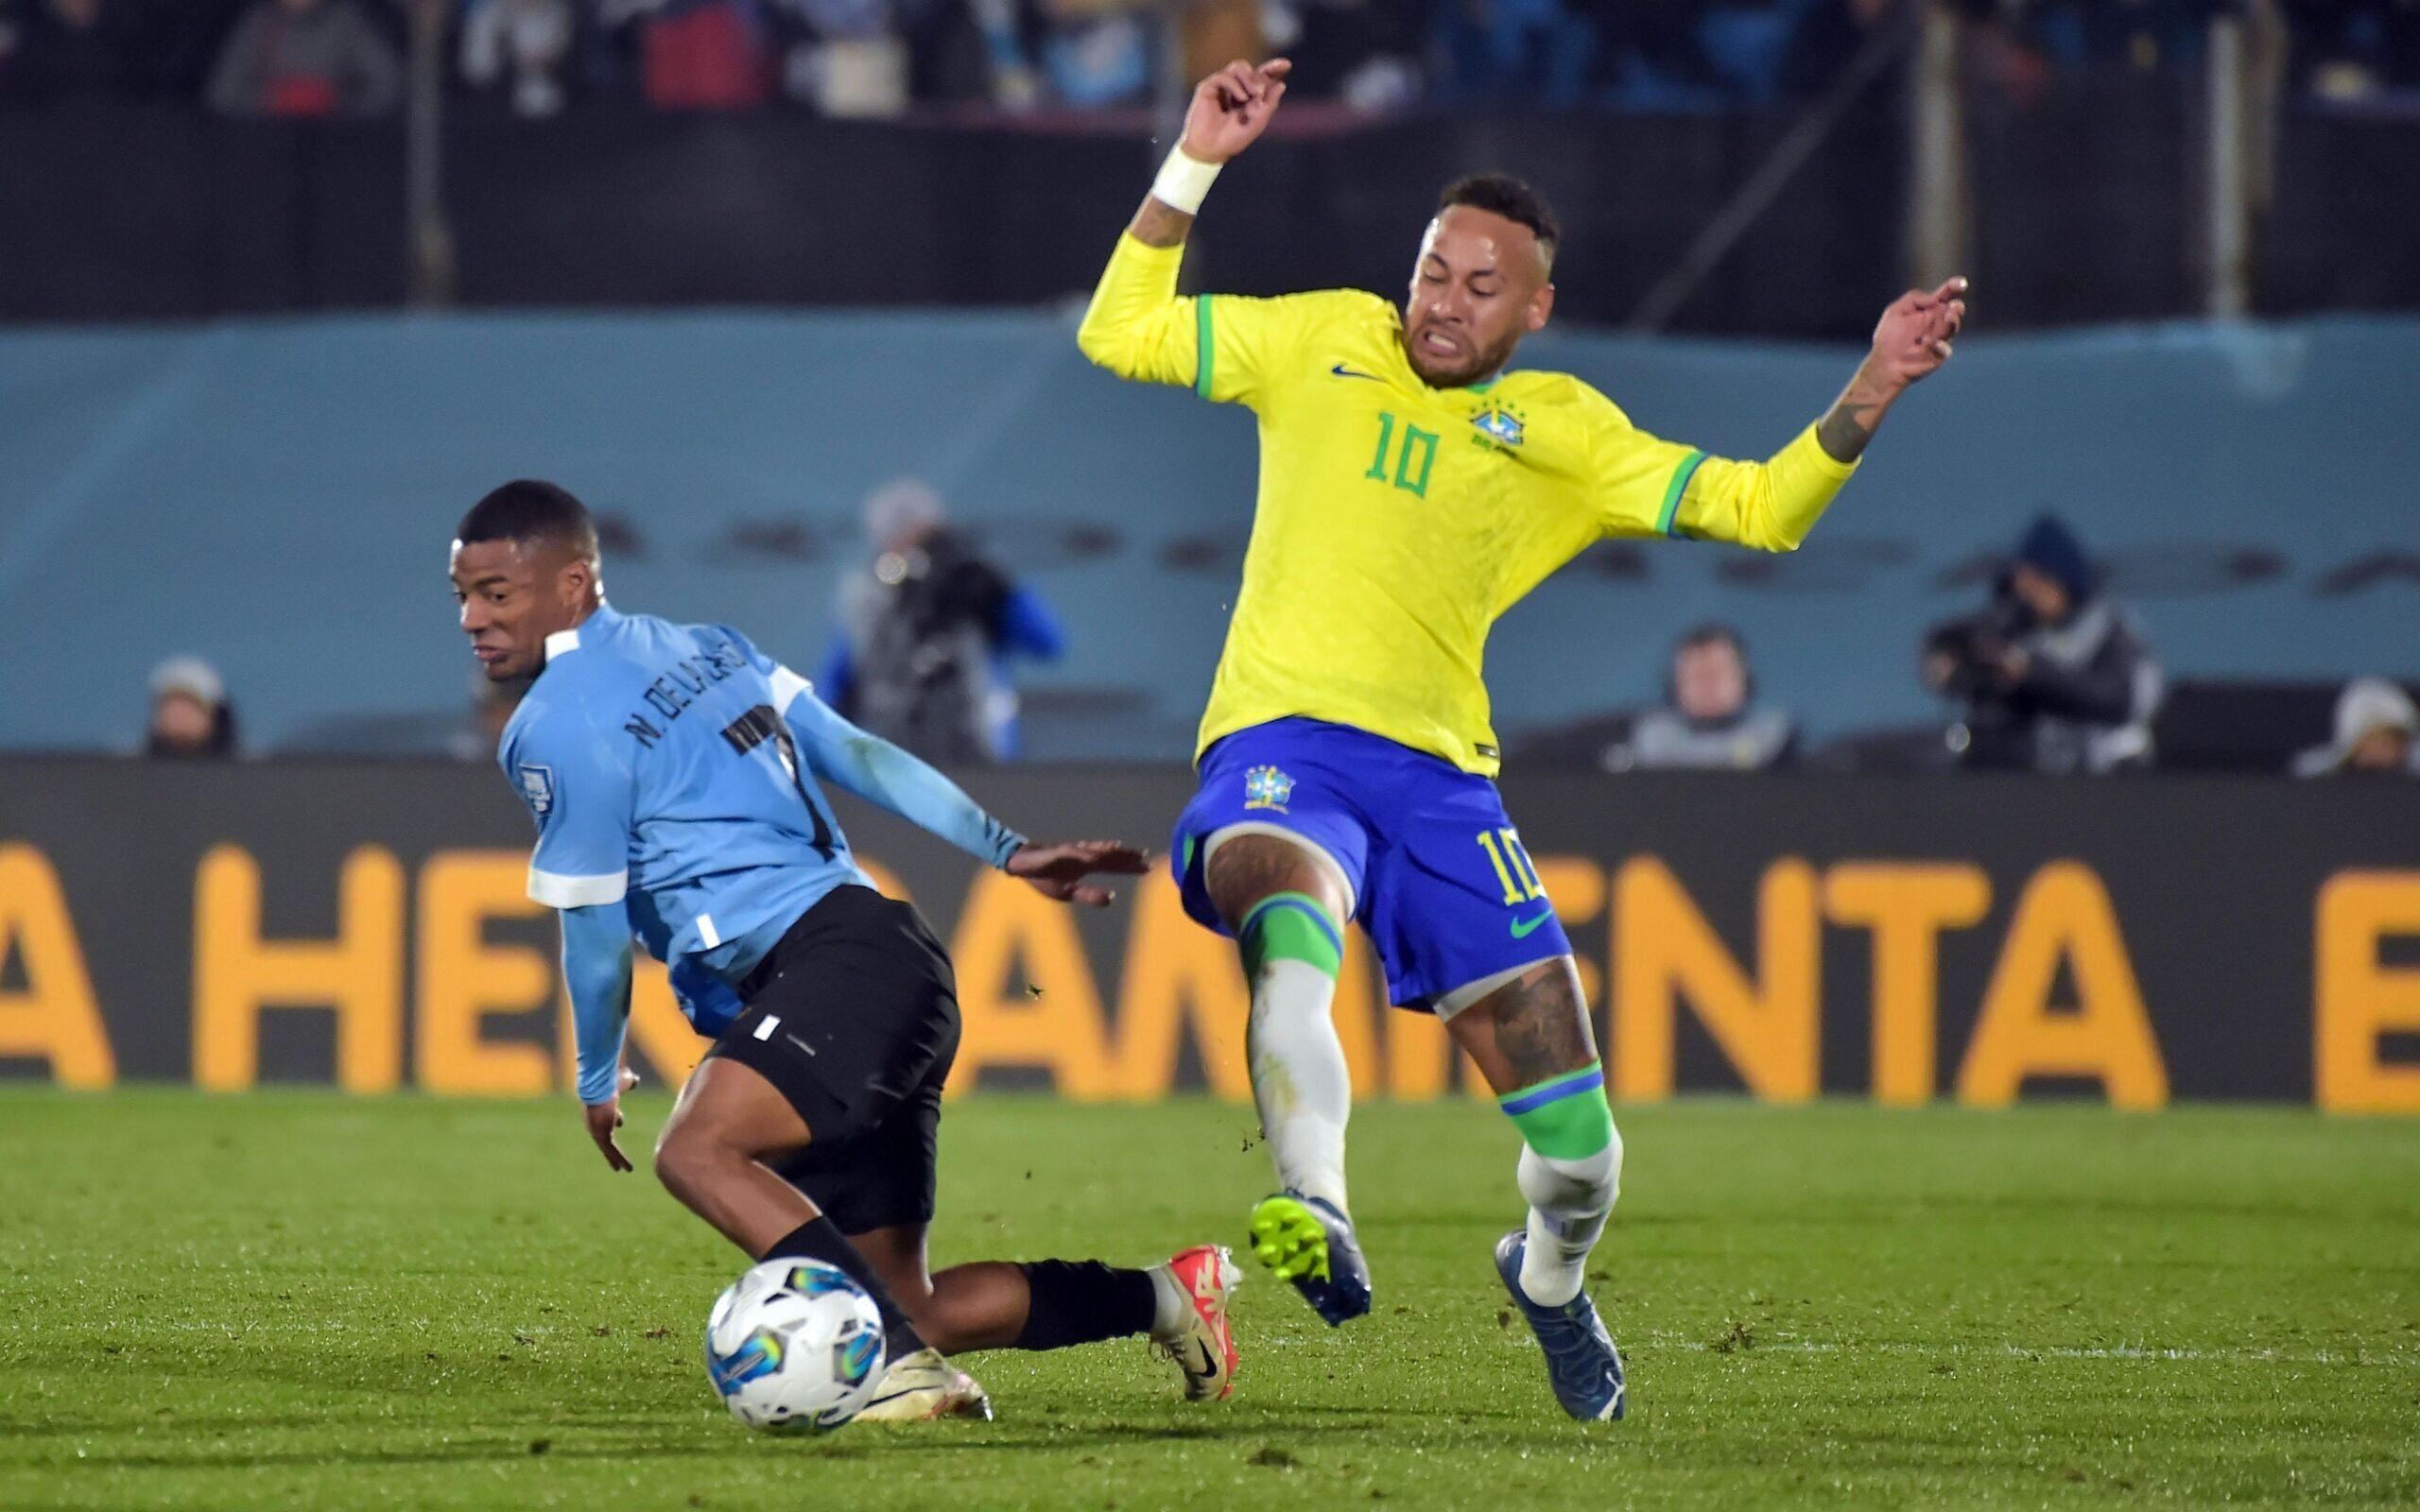 Seleção brasileira perde para o Uruguai por 2 a 0 e Neymar sai lesionado